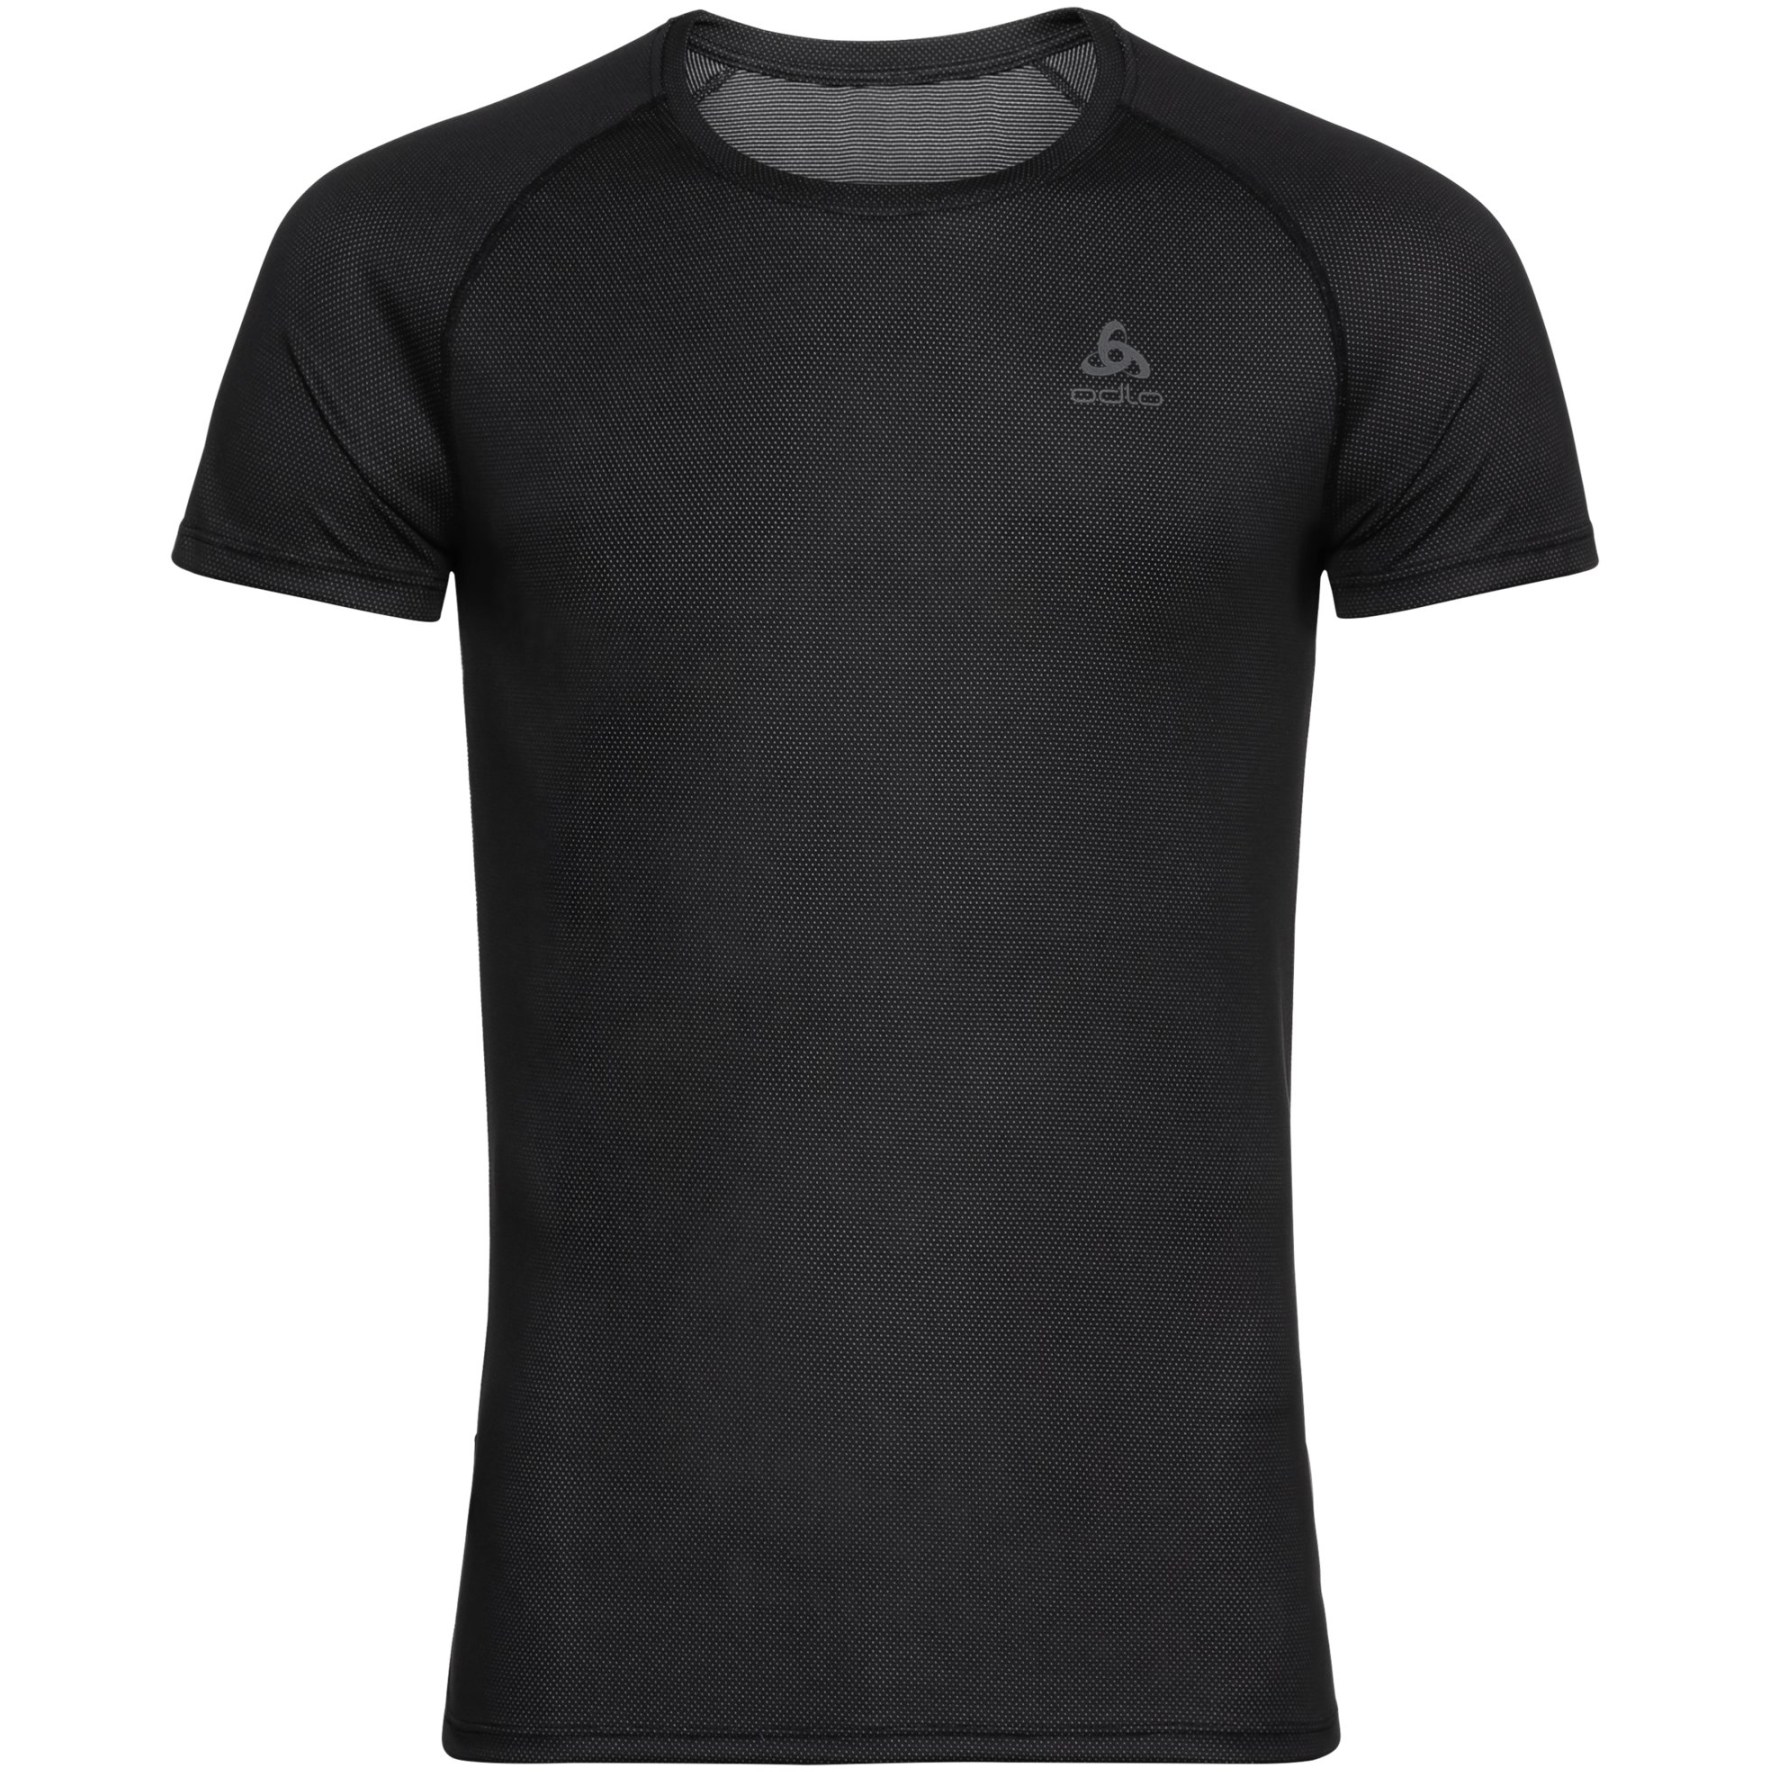 Produktbild von Odlo Active F-Dry Light Kurzarm-Unterhemd Herren - schwarz